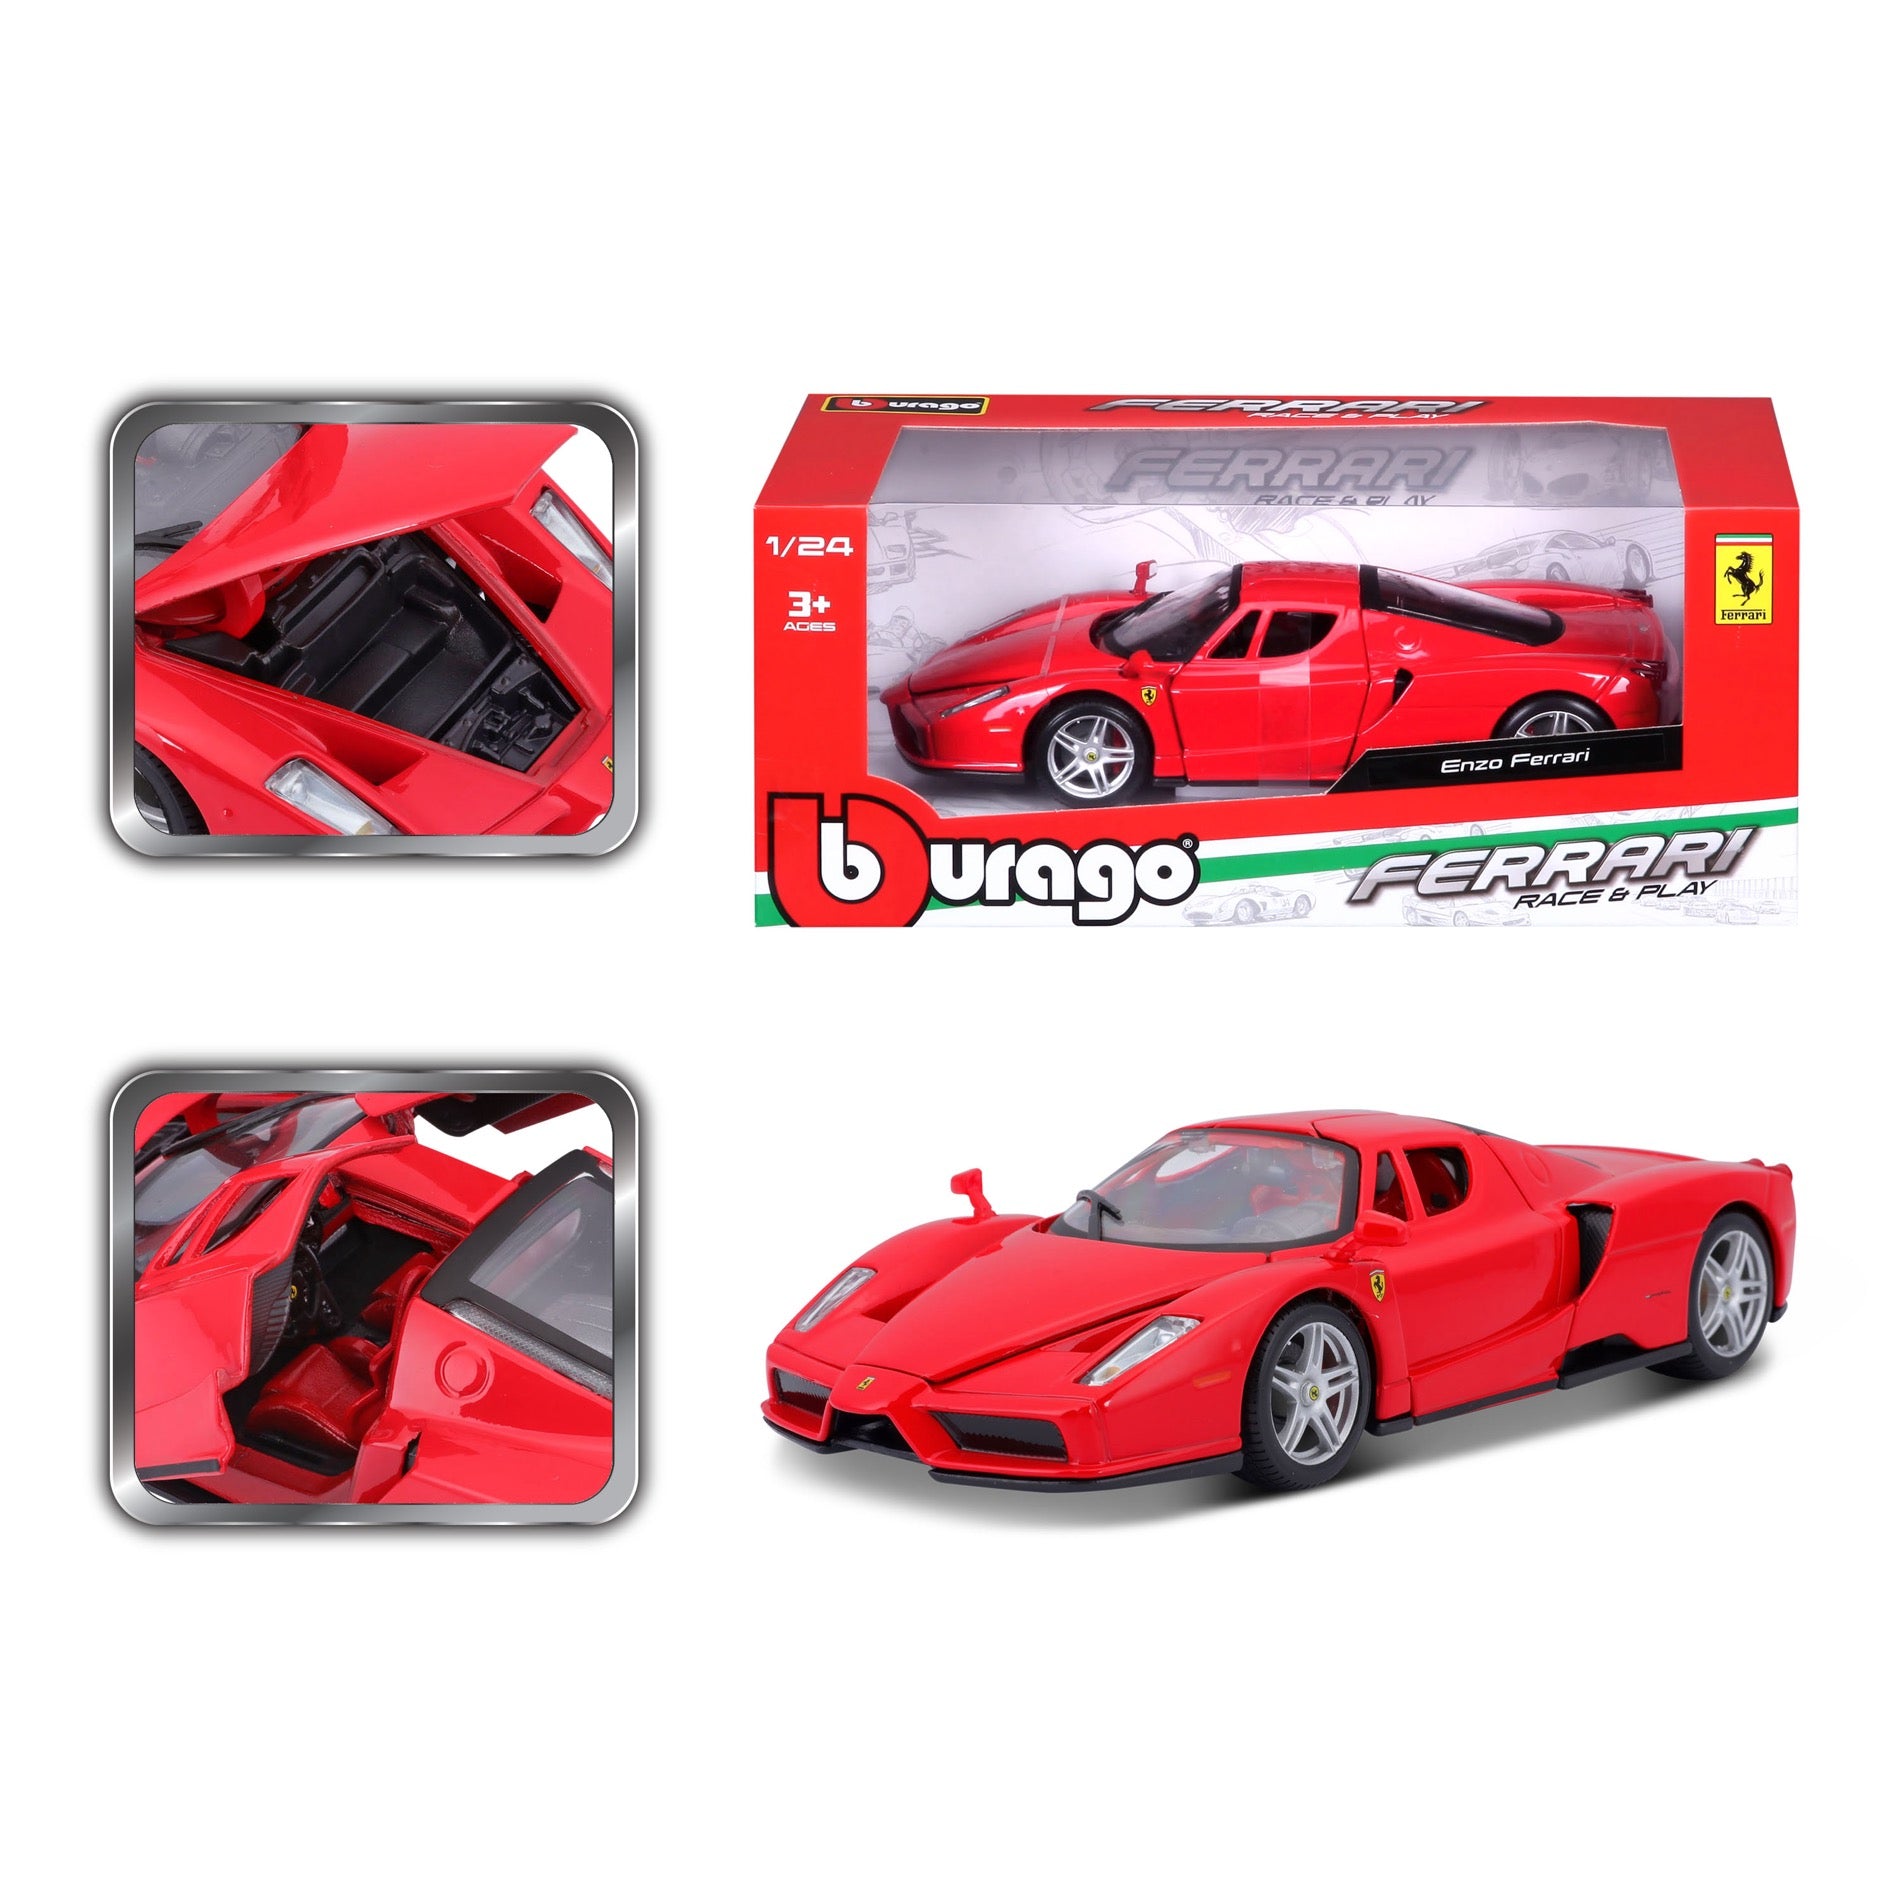 Ferrari Collection Car, 1:24 Ferrari Bburago